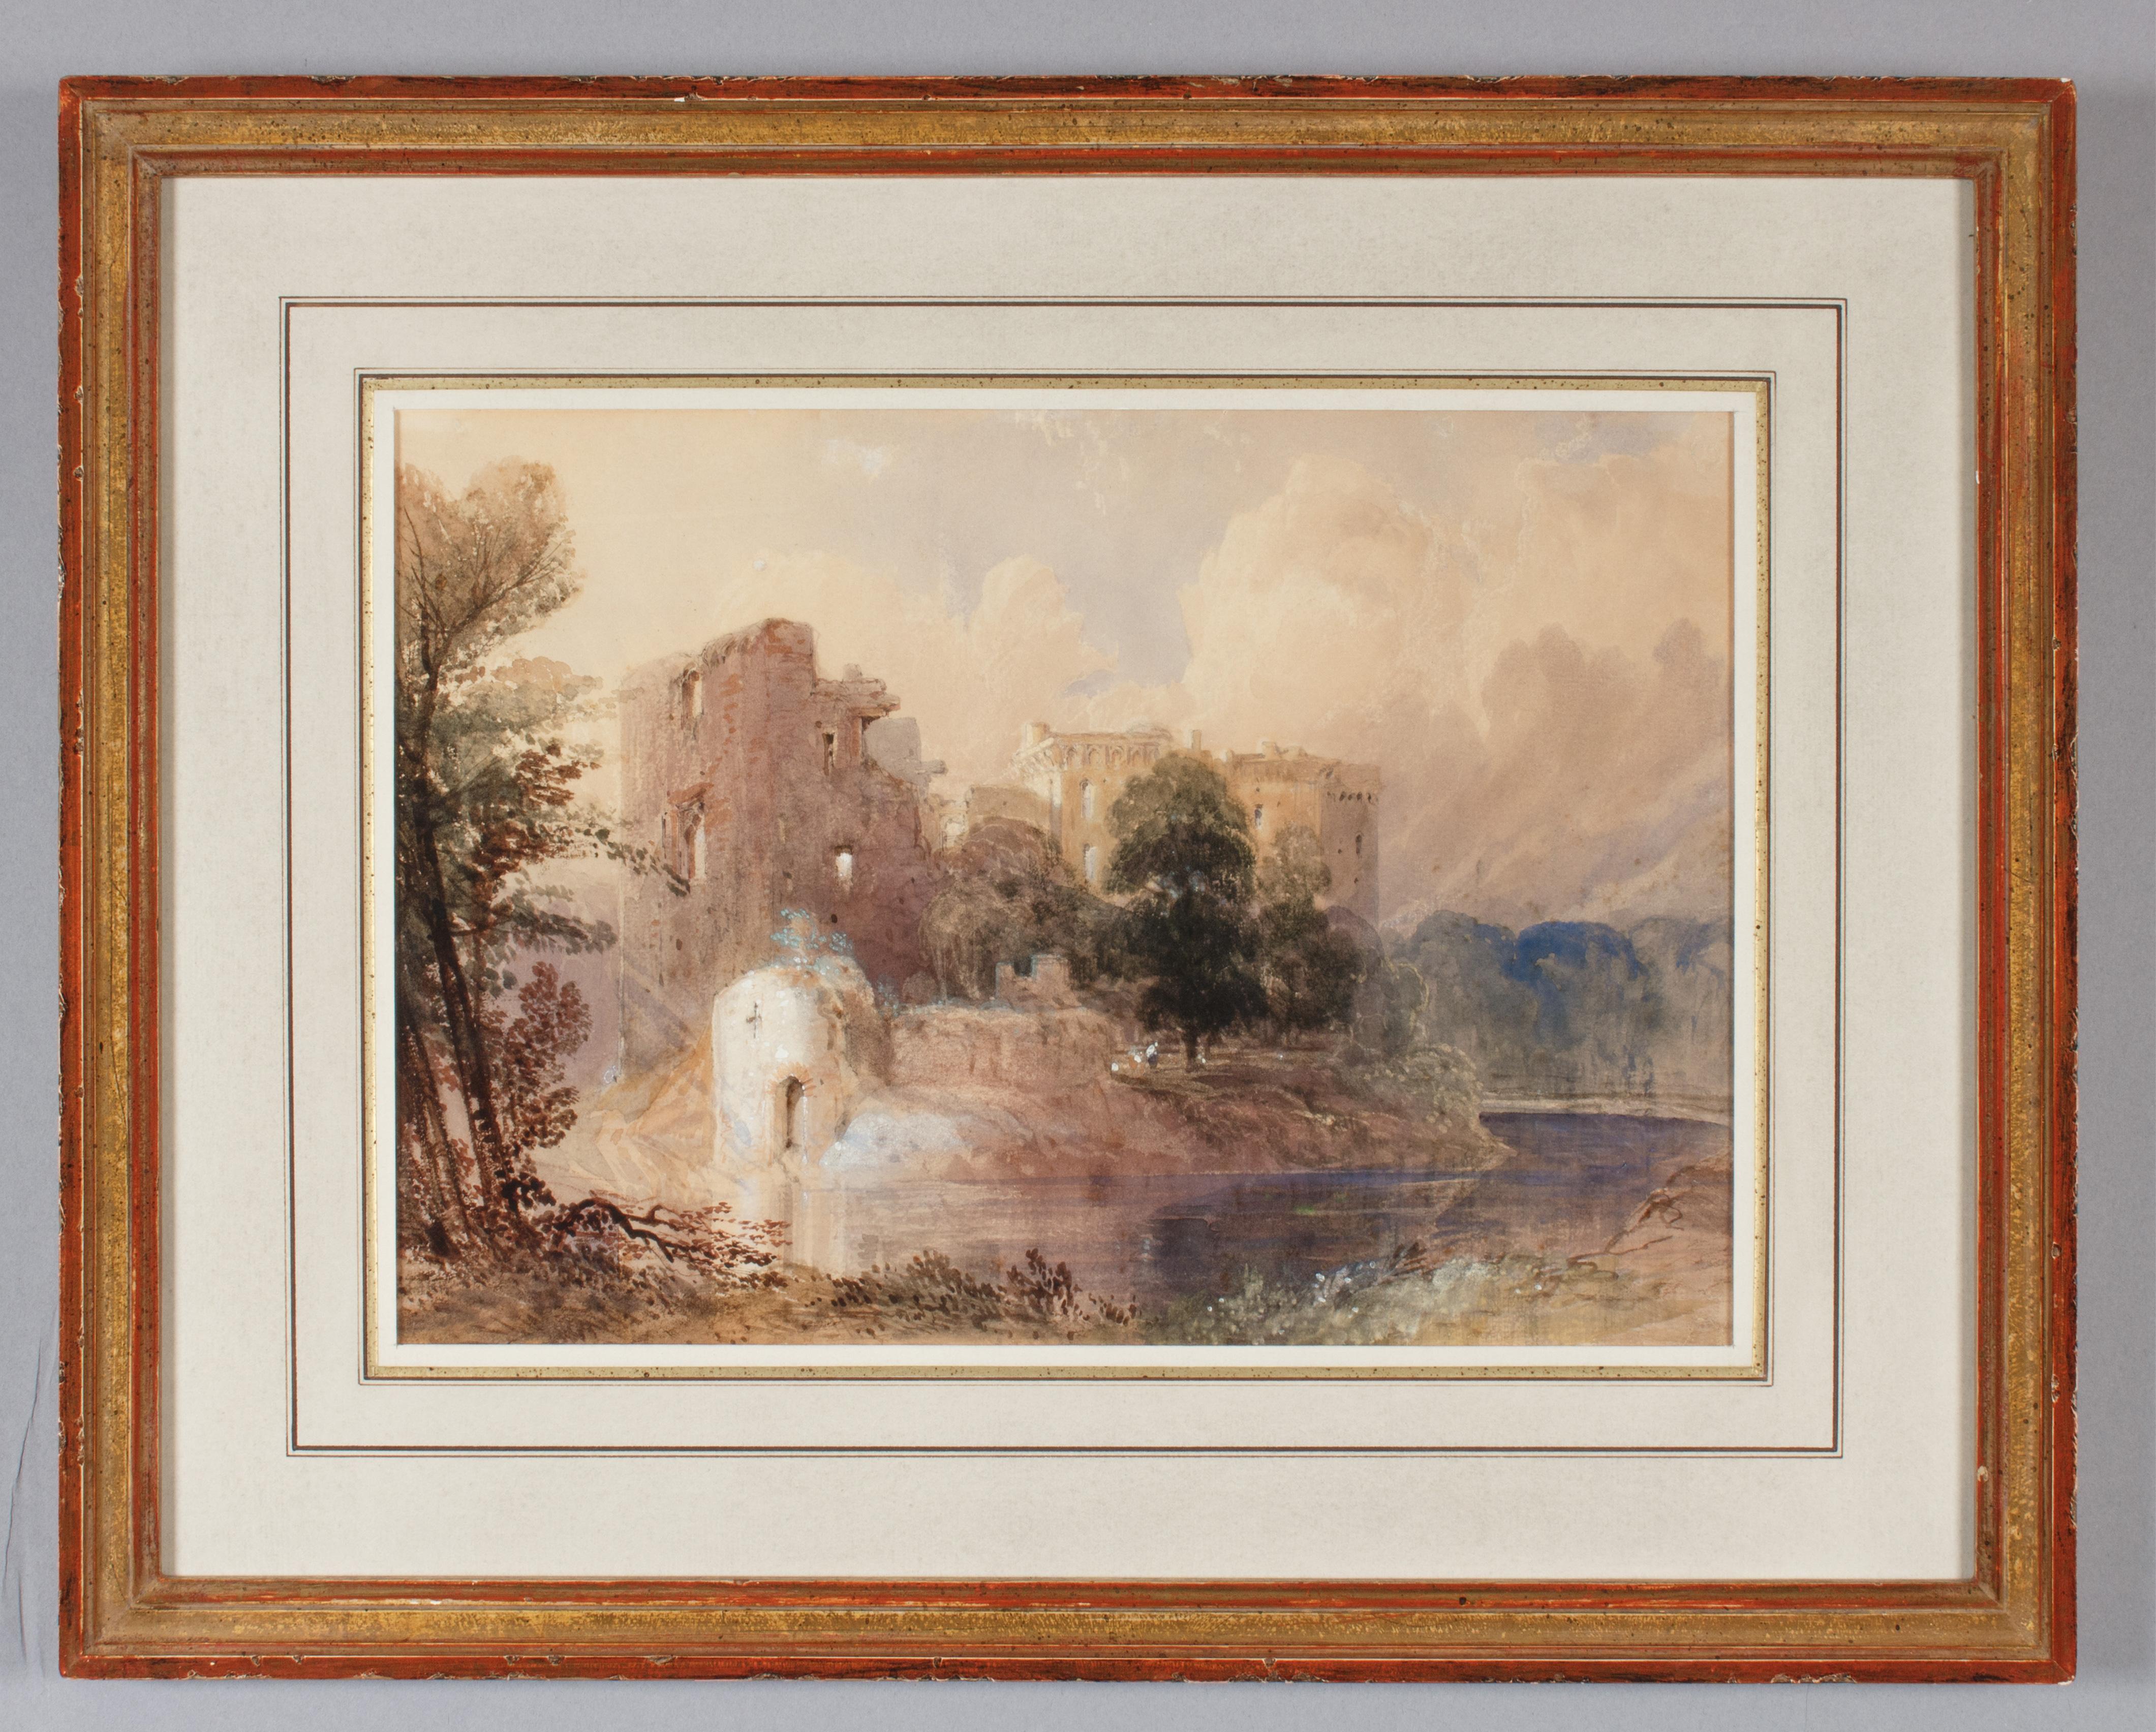 David Hall McKewan
(Anglais, 1817-1873)
Château de Raglan
Aquarelle sur papier, 9 x 13 pouces (vue)

David Hall McKewan a étudié l'aquarelle avec David COX (l'aîné) et a exposé à la Royal Academy en 1836. Il devient membre à part entière du Royal